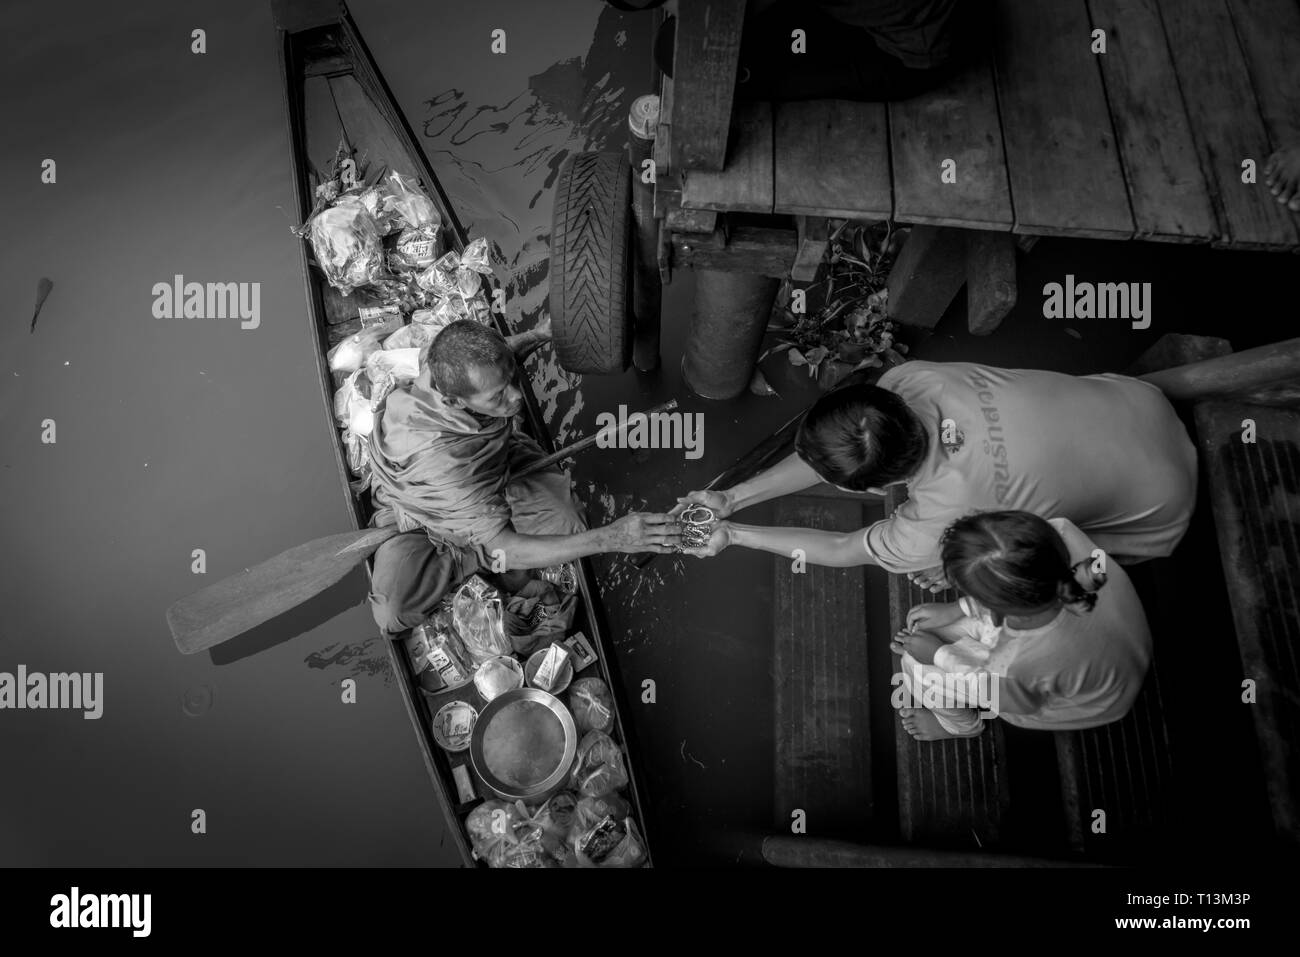 Amphawa, Thaïlande. Le 25 octobre 2015. La réception de l'Aumône en moine matin Amphawa depuis un adorateur. Banque D'Images